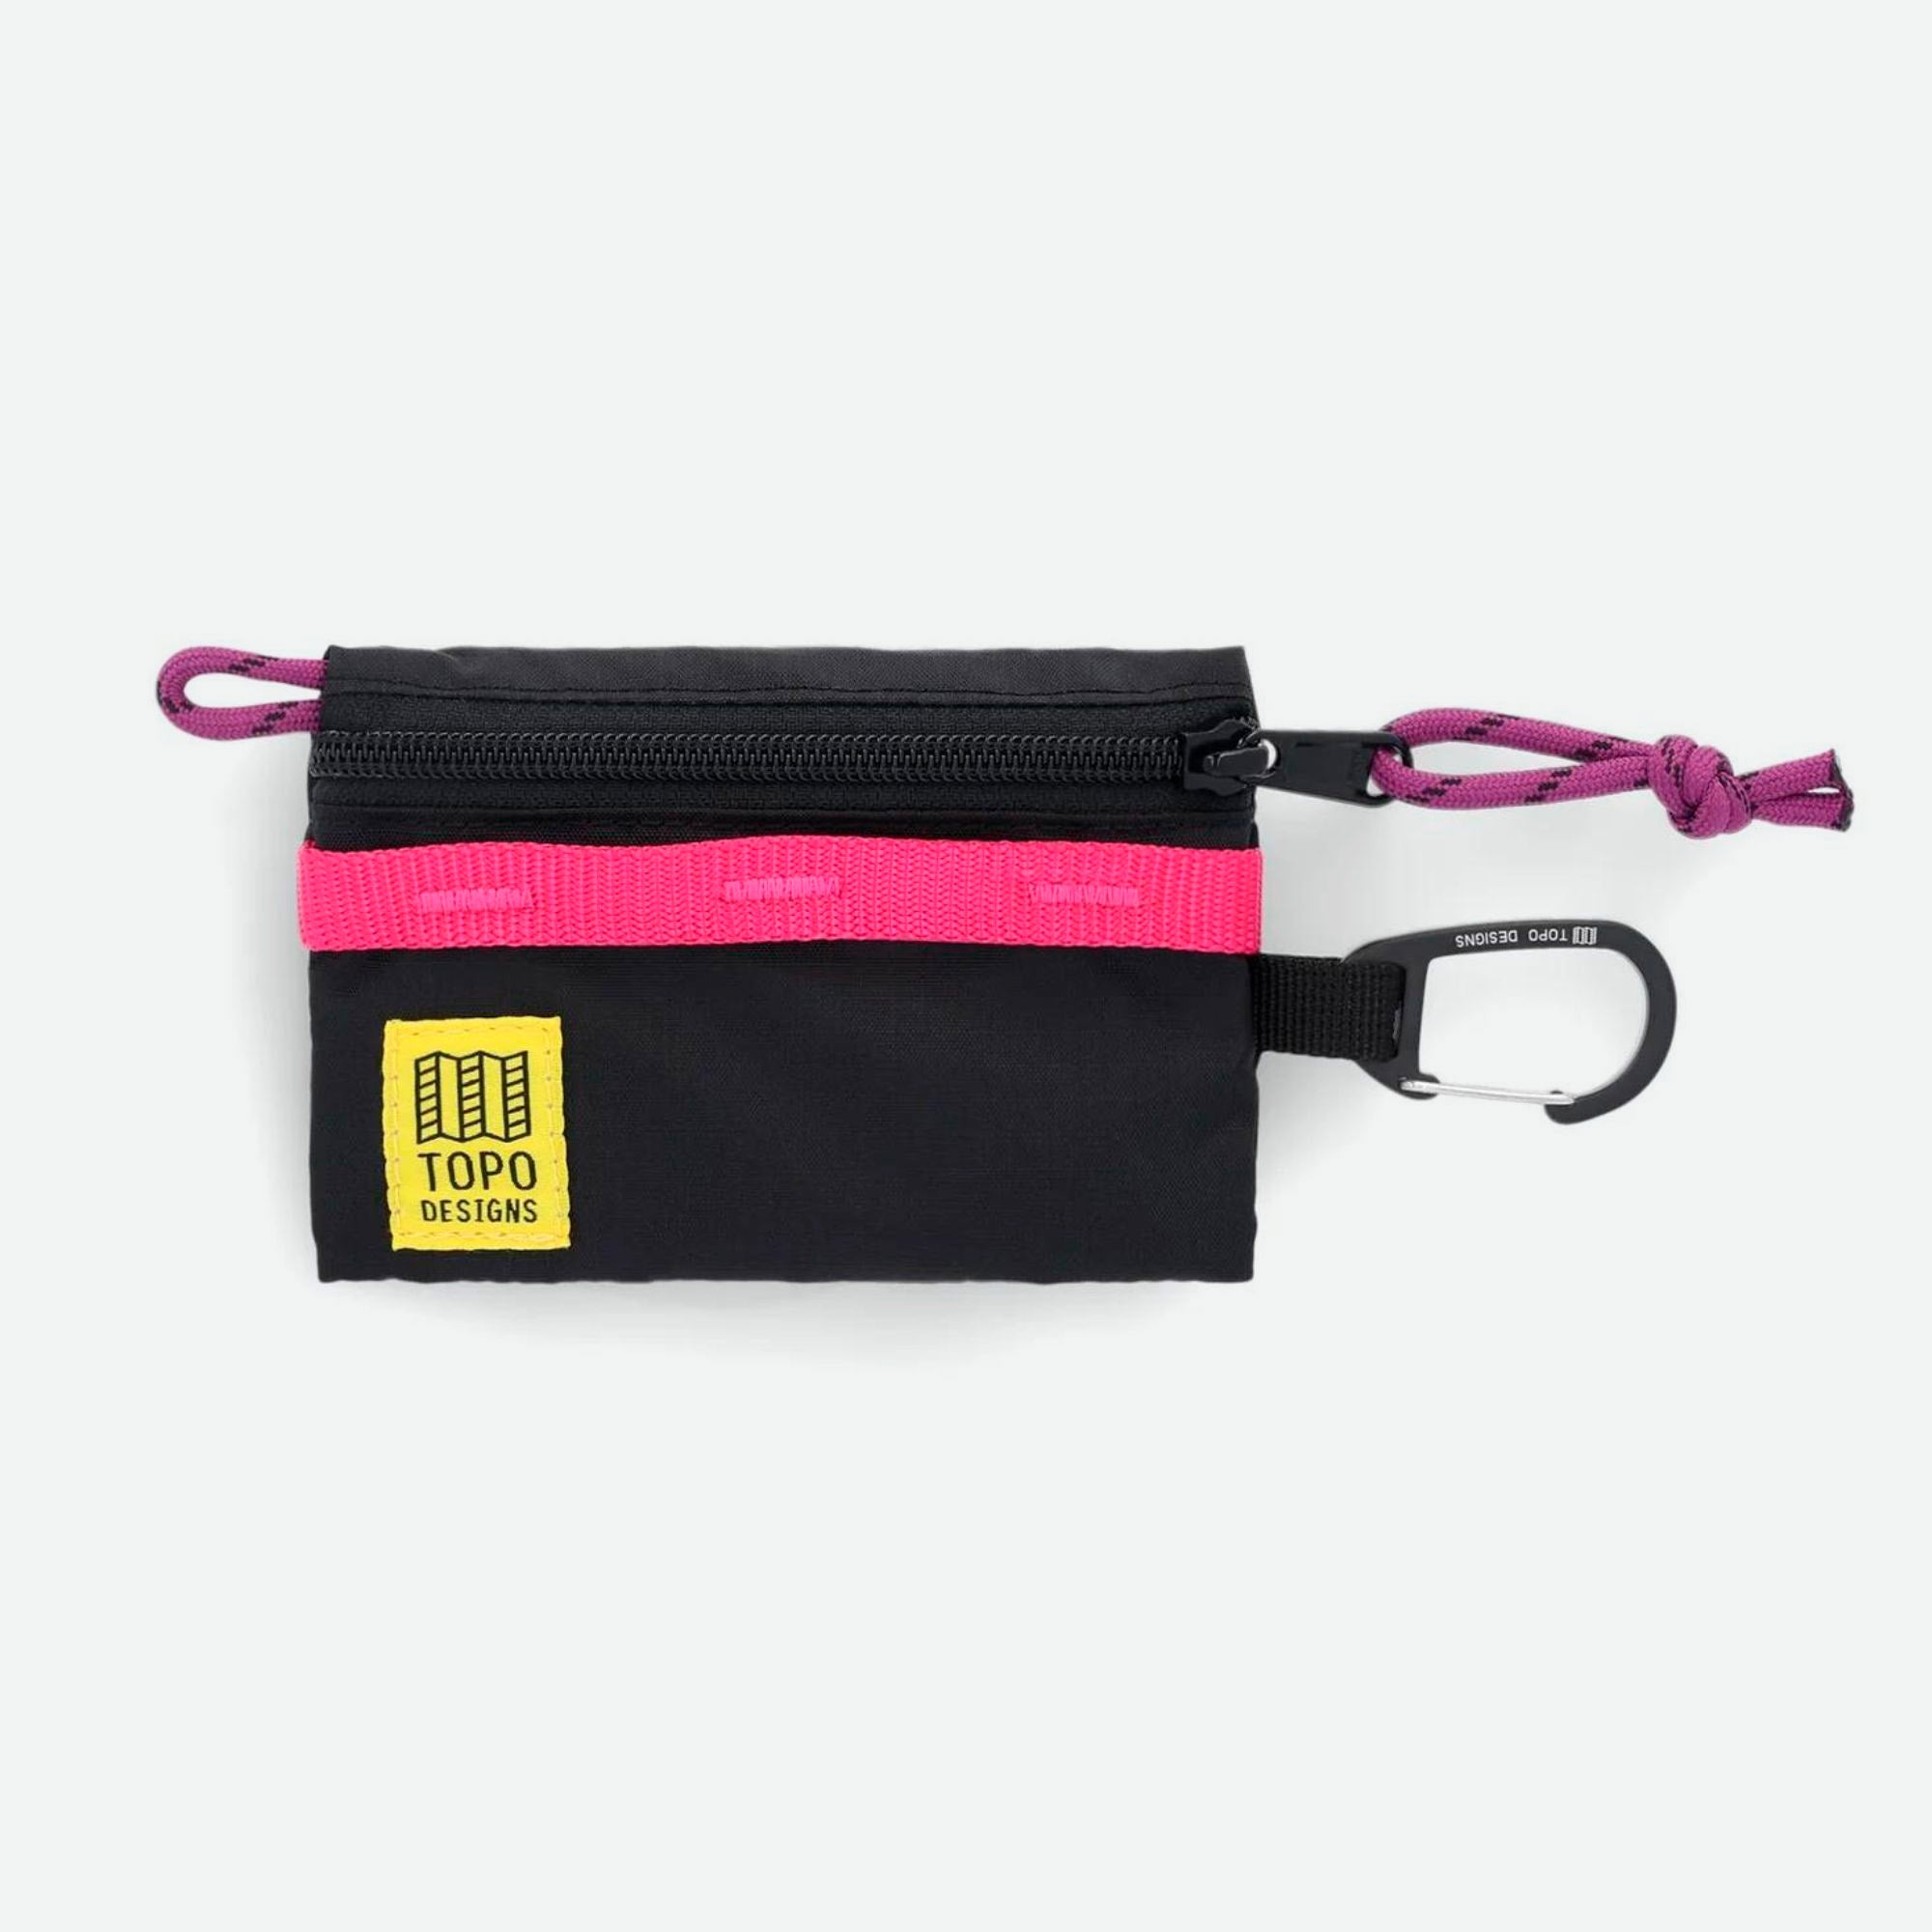 Topo Designs Mountain Accessory Bag Black